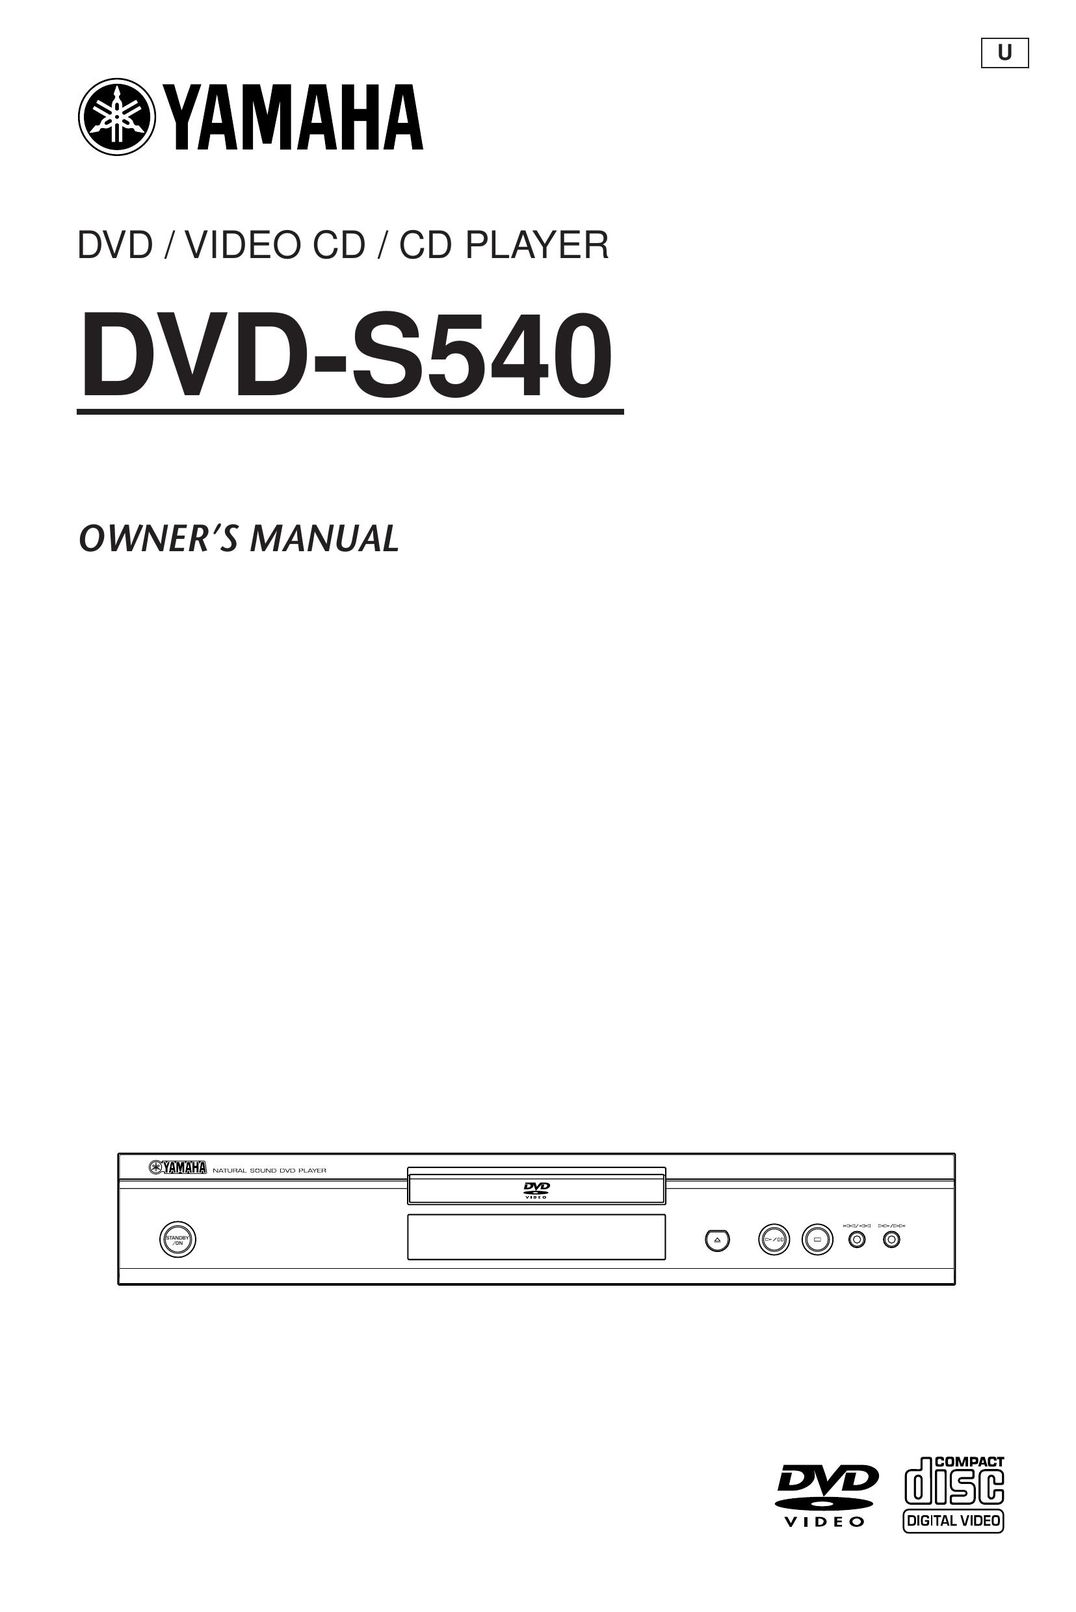 Yamaha DVD-S540 DVD Player User Manual